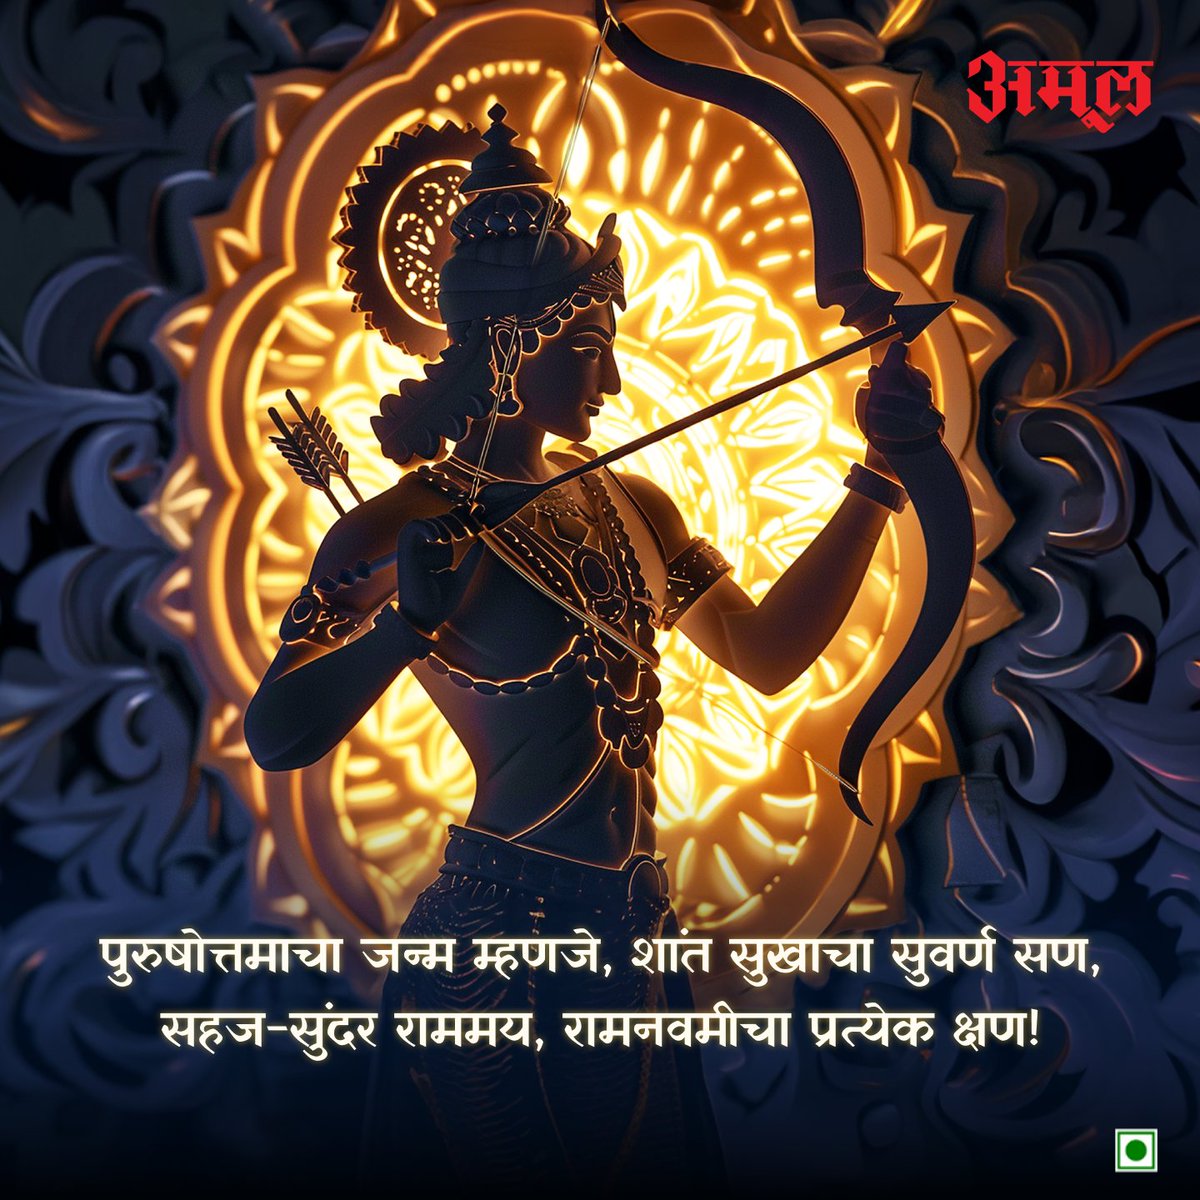 सर्वांना रामनवमीच्या मंगल शुभेच्छा!
.
.
.
#Amul #AmulIndia #AmulMaharashtra #AmulMarathi #RamNavami #HappyRamNavami